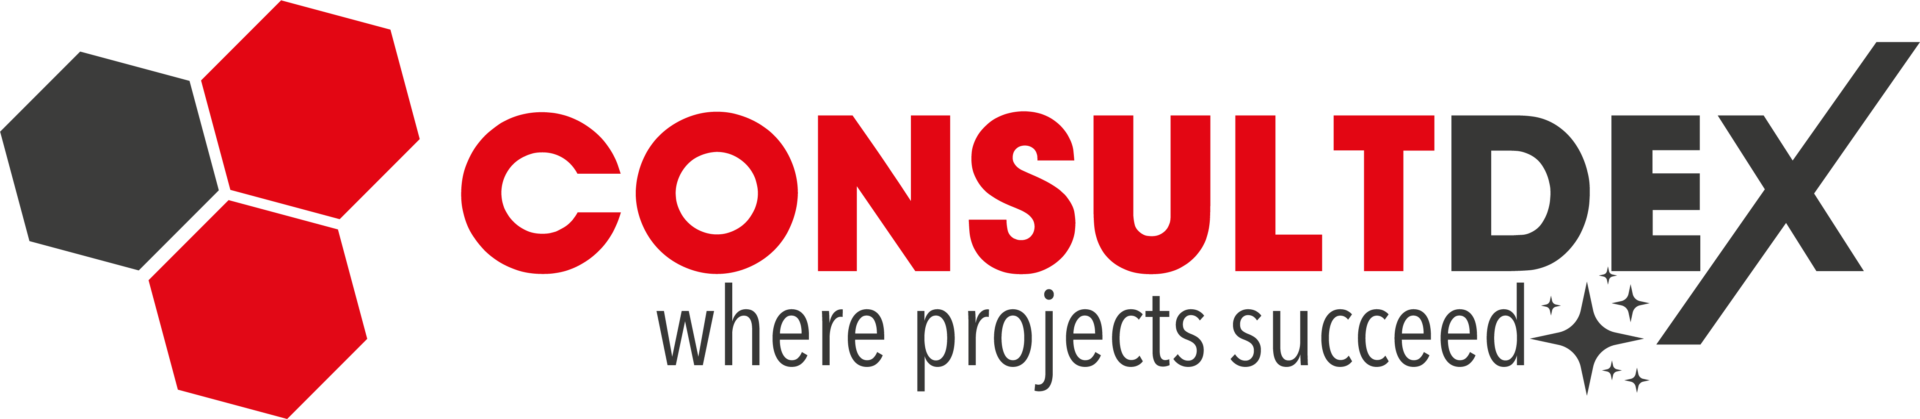 ConsultdeX - Logo